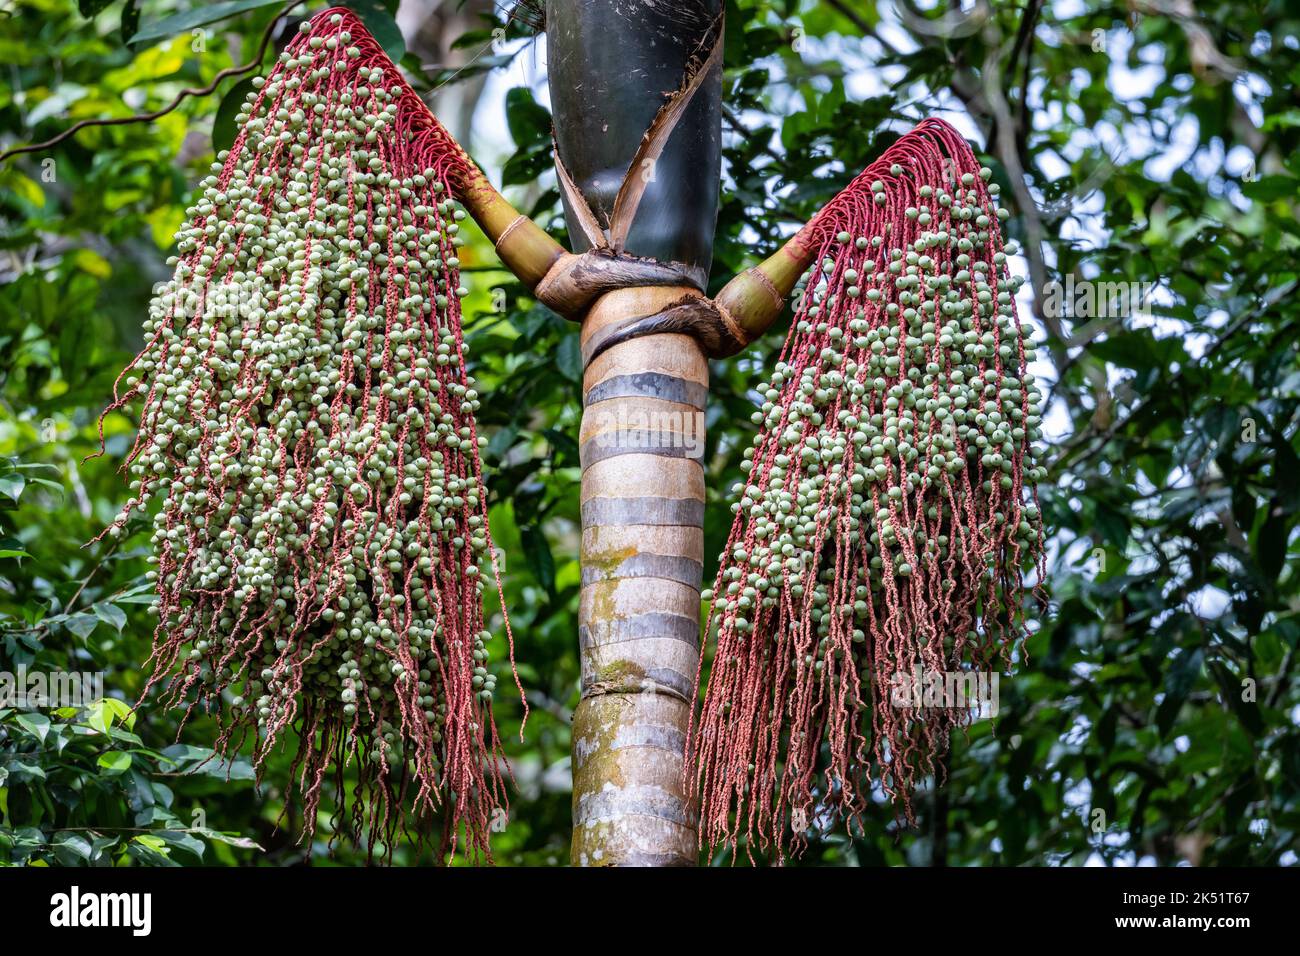 Fruits de palmier (Oenocarpus balickii). Amazonas, Brésil. Banque D'Images